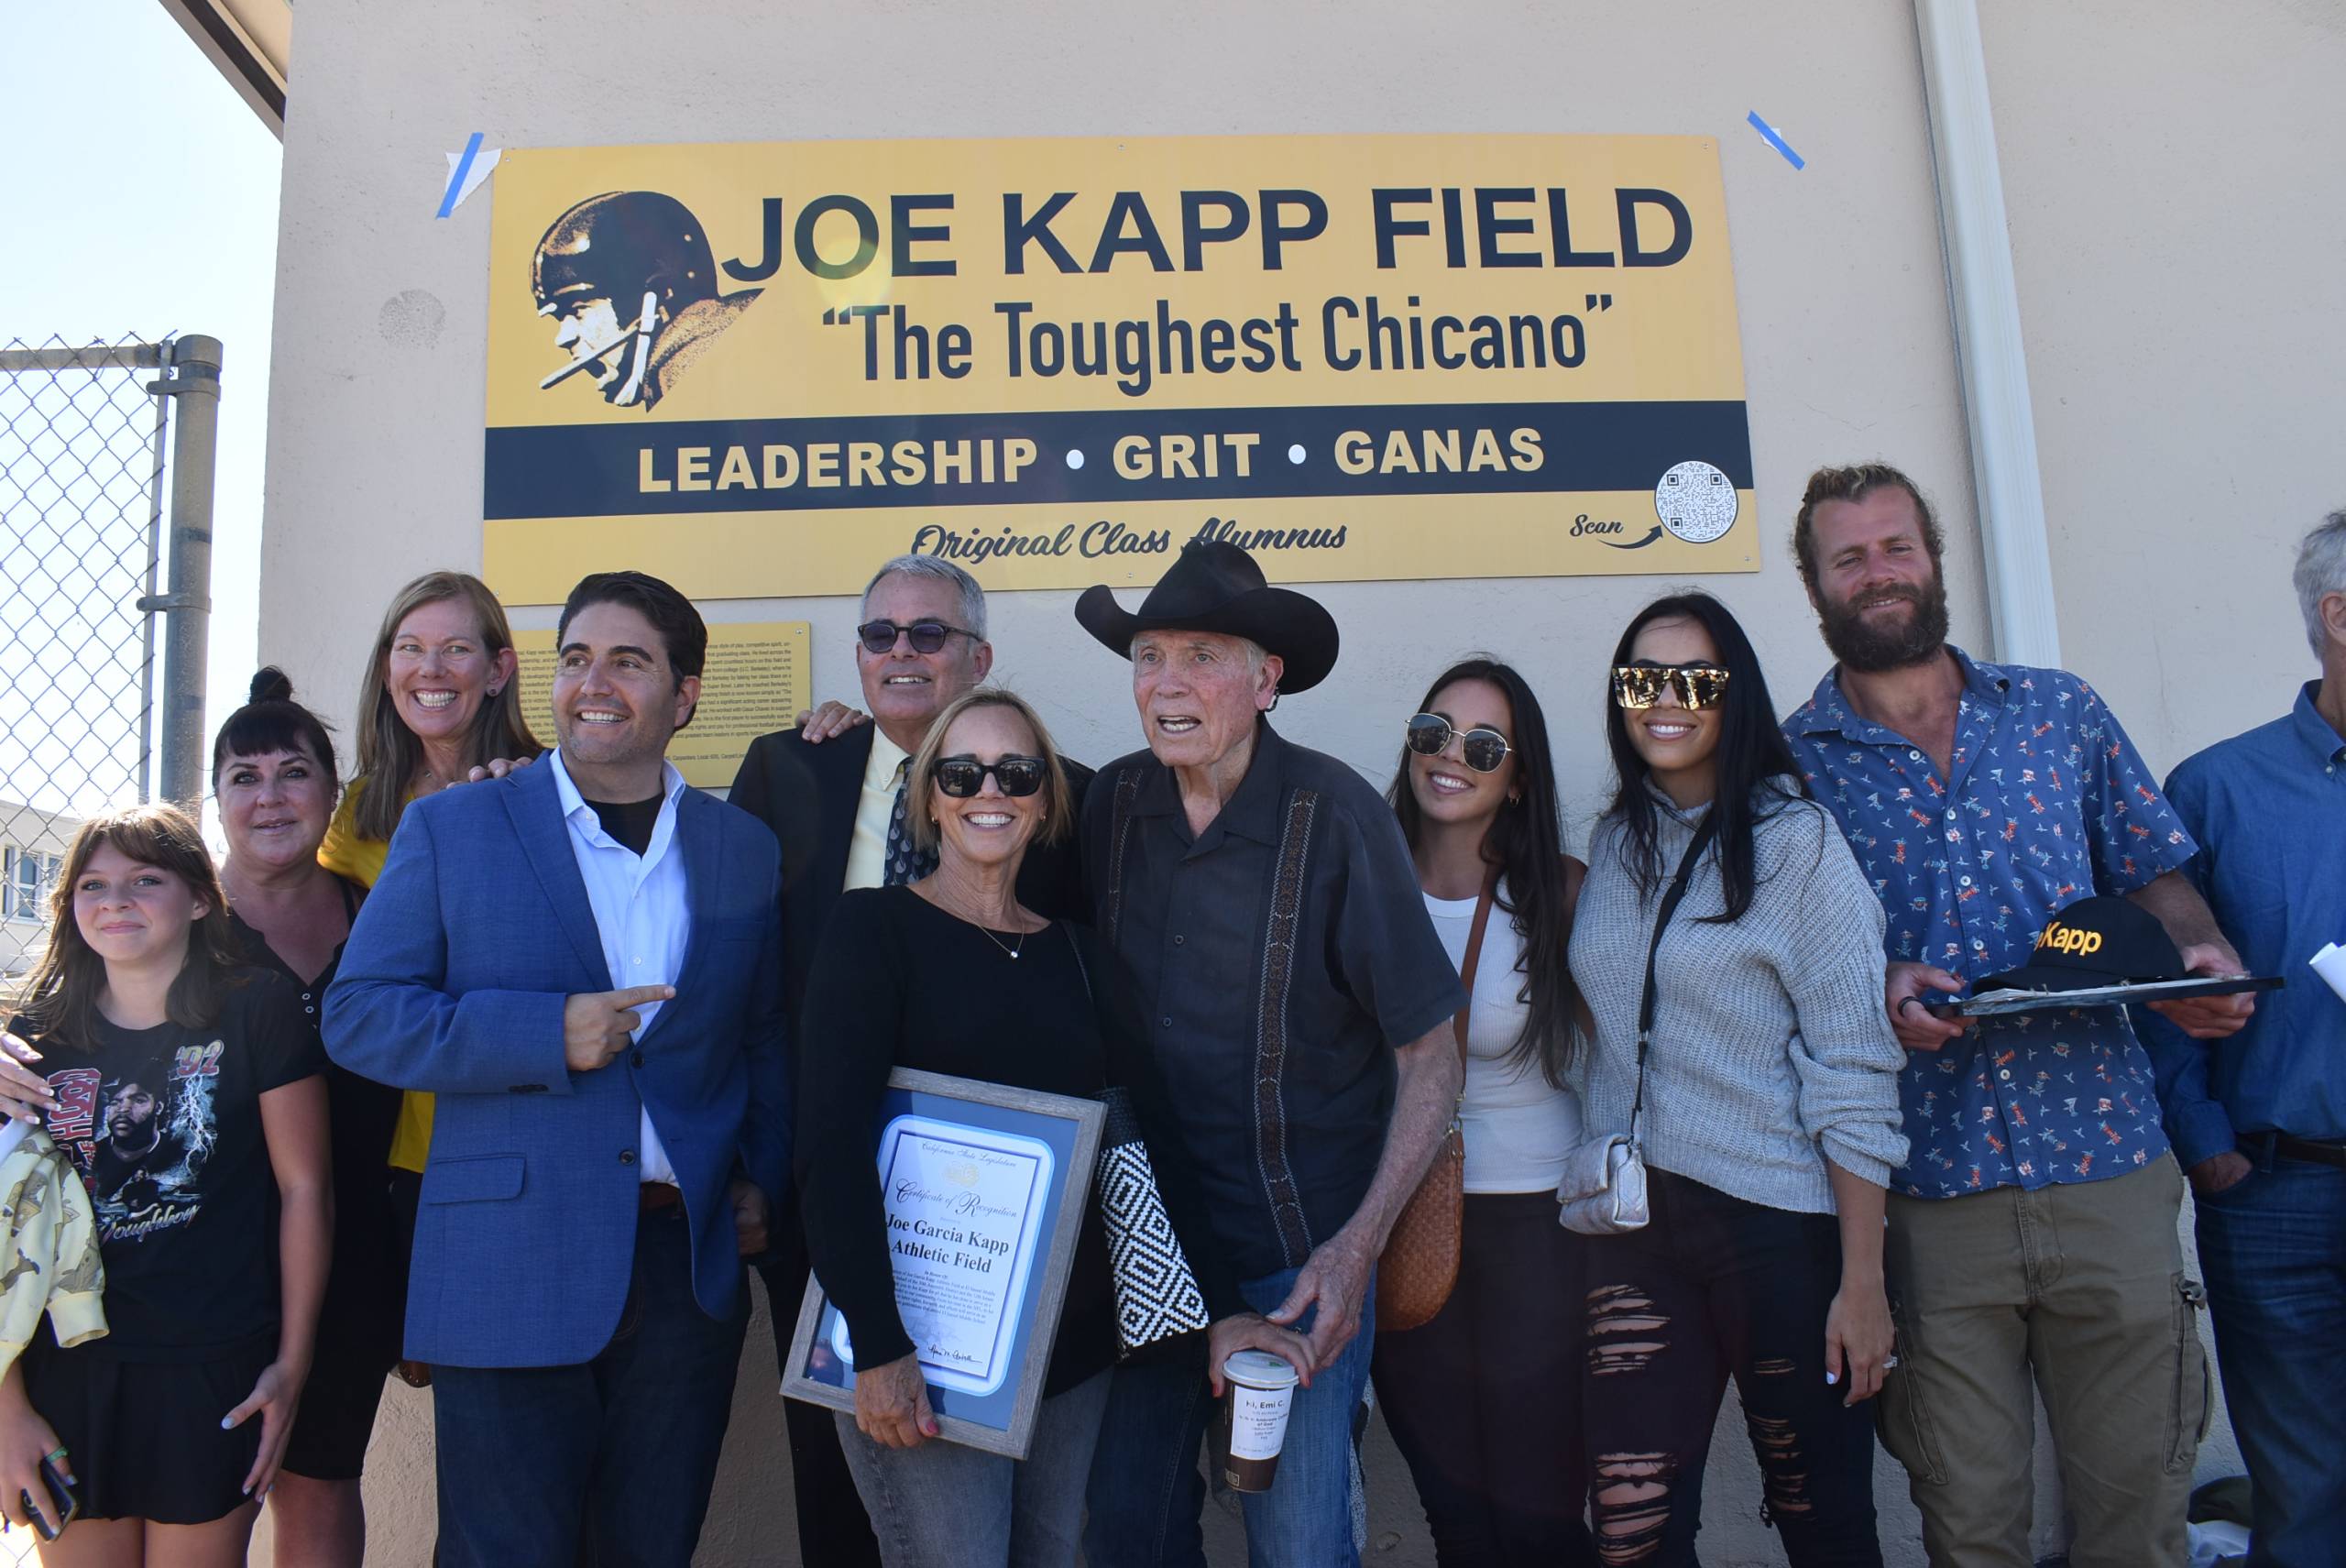 Salinas football legend Joe Kapp dies at age 85